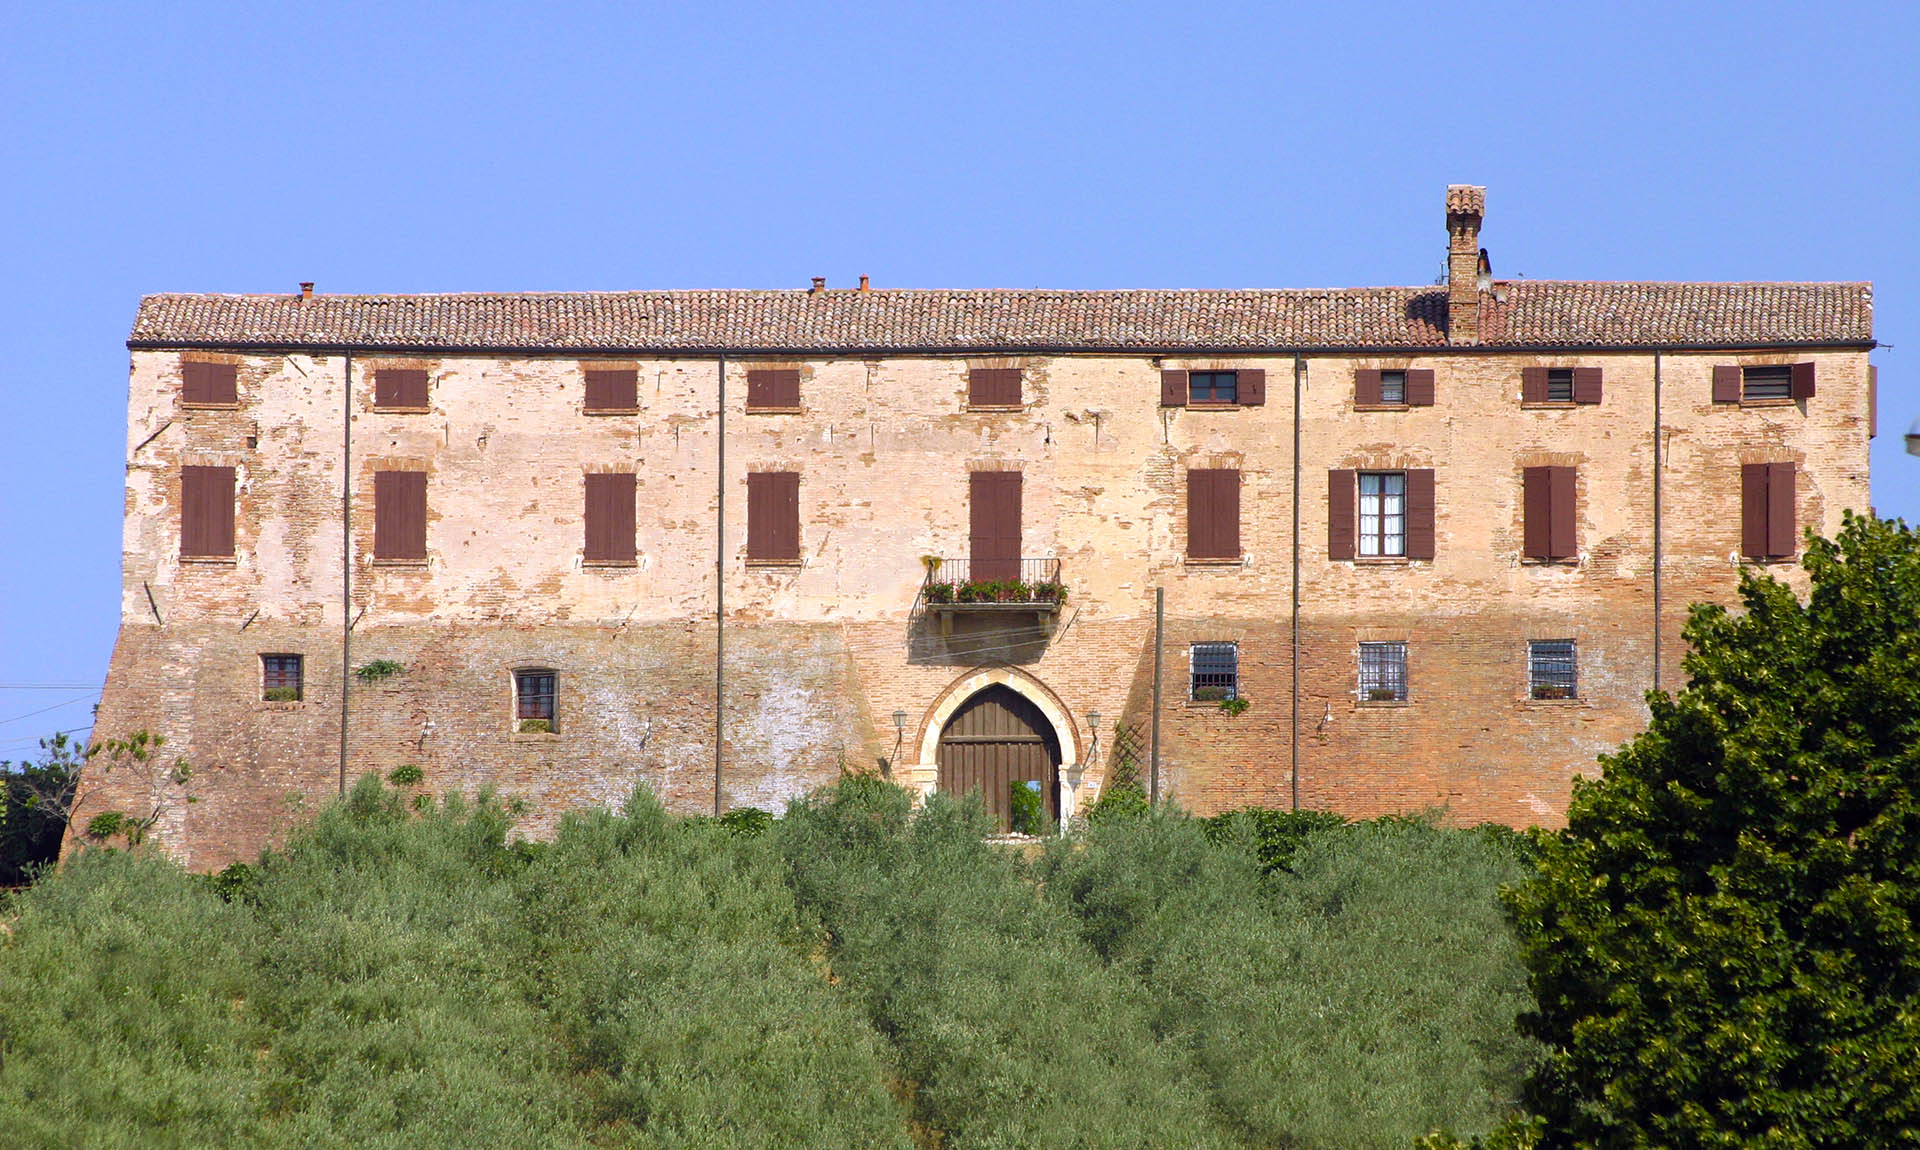 Palazzo Marcosanti